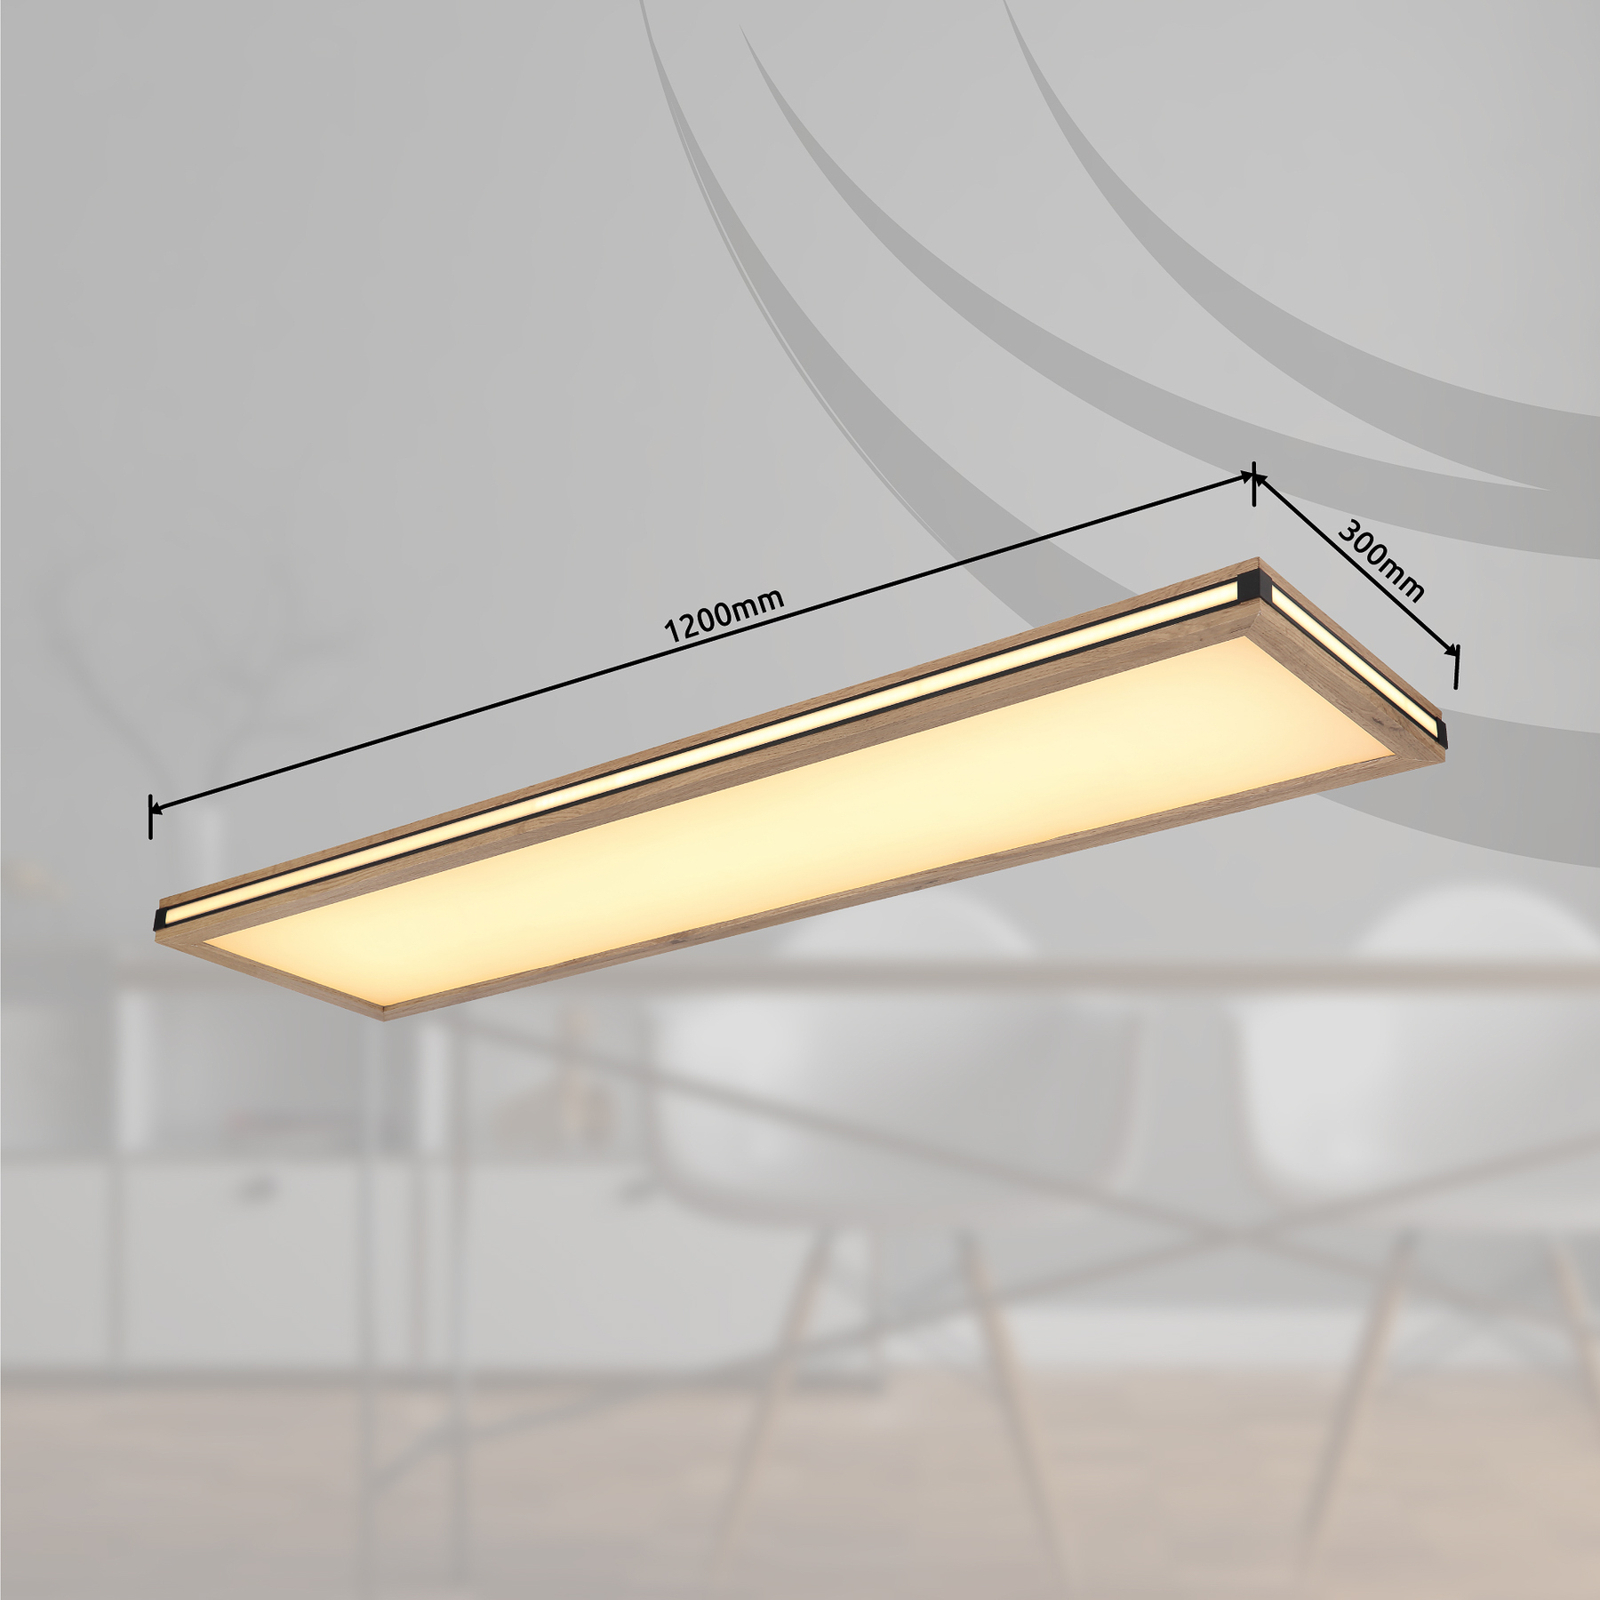 LED ceiling light Karla rectangular length 120 cm